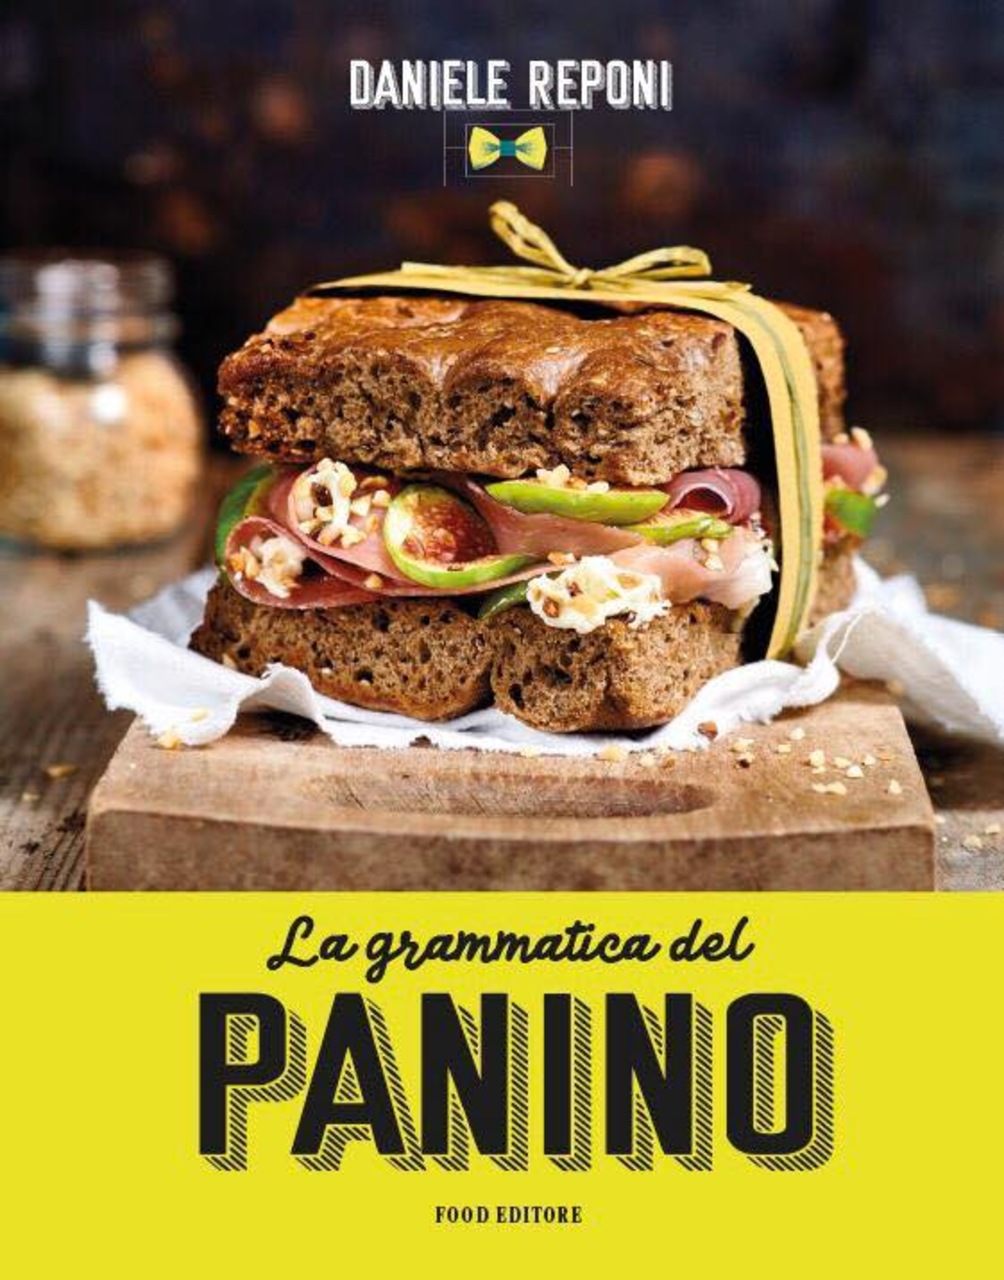 Sandwich gastronomique : la couverture du livre "La grammaire du sandwich" de Daniele Reponi